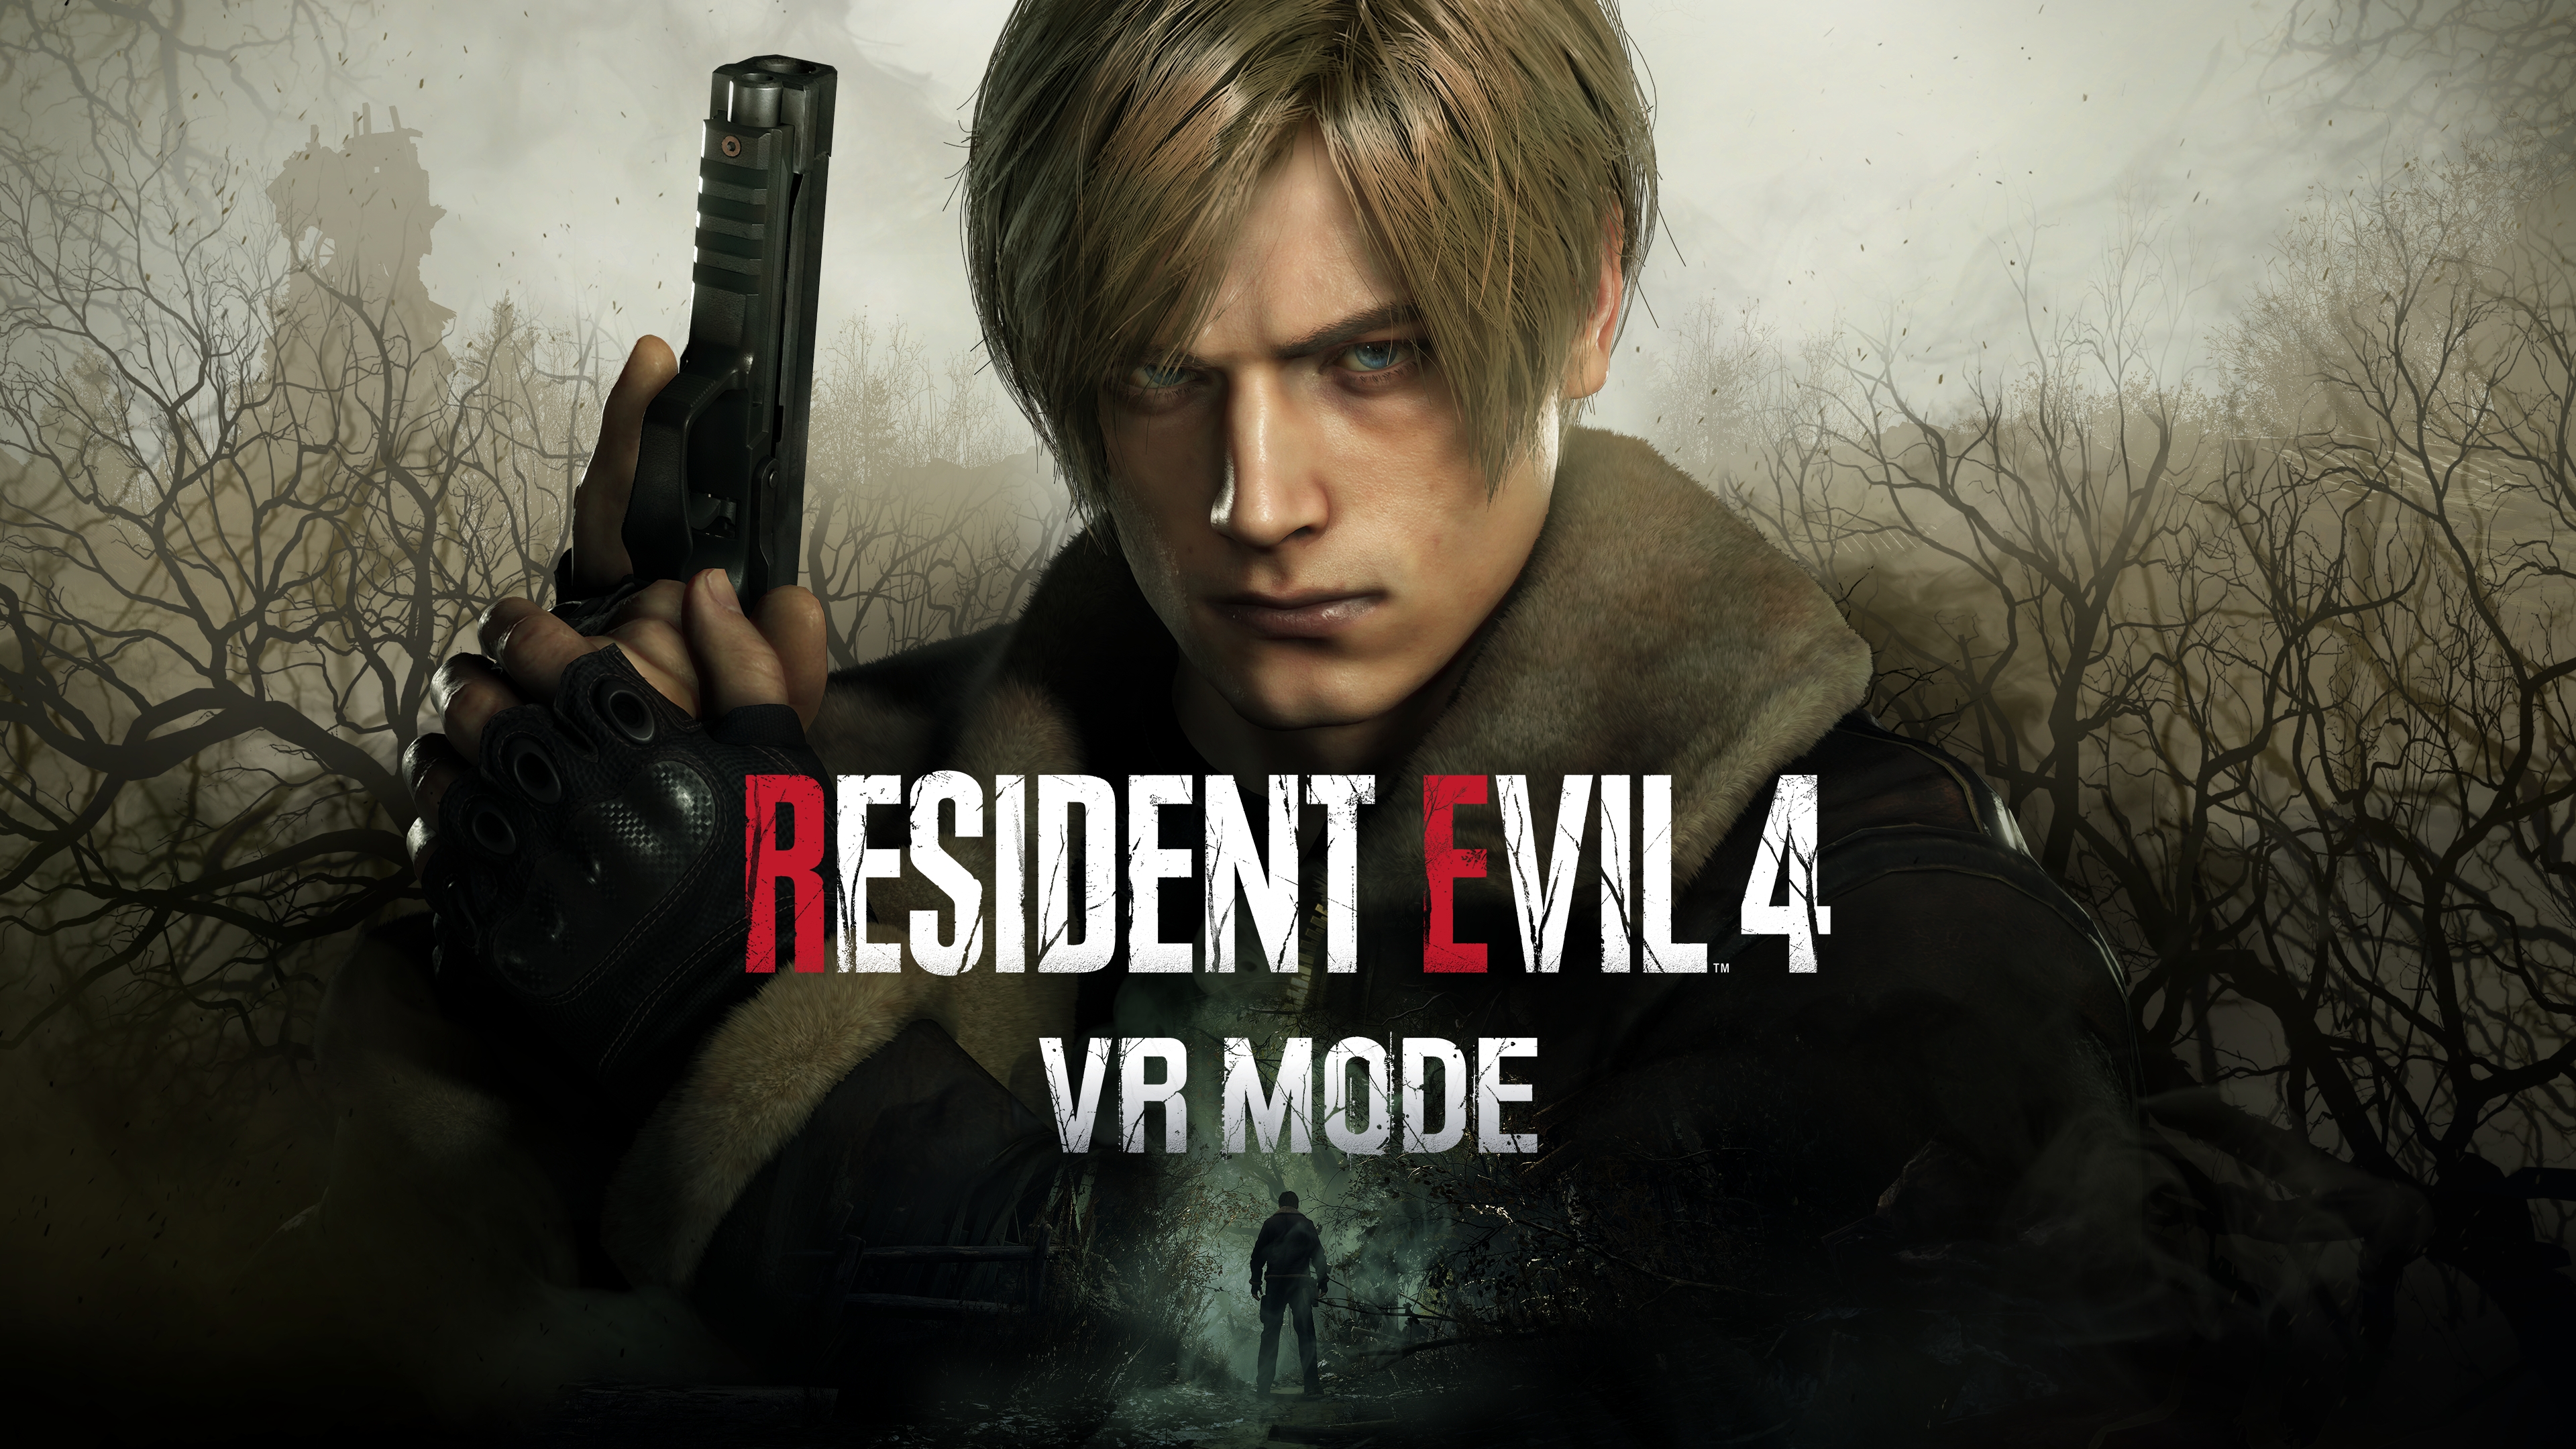 Capcom finally announces Resident Evil 4 remake Separate Ways DLC